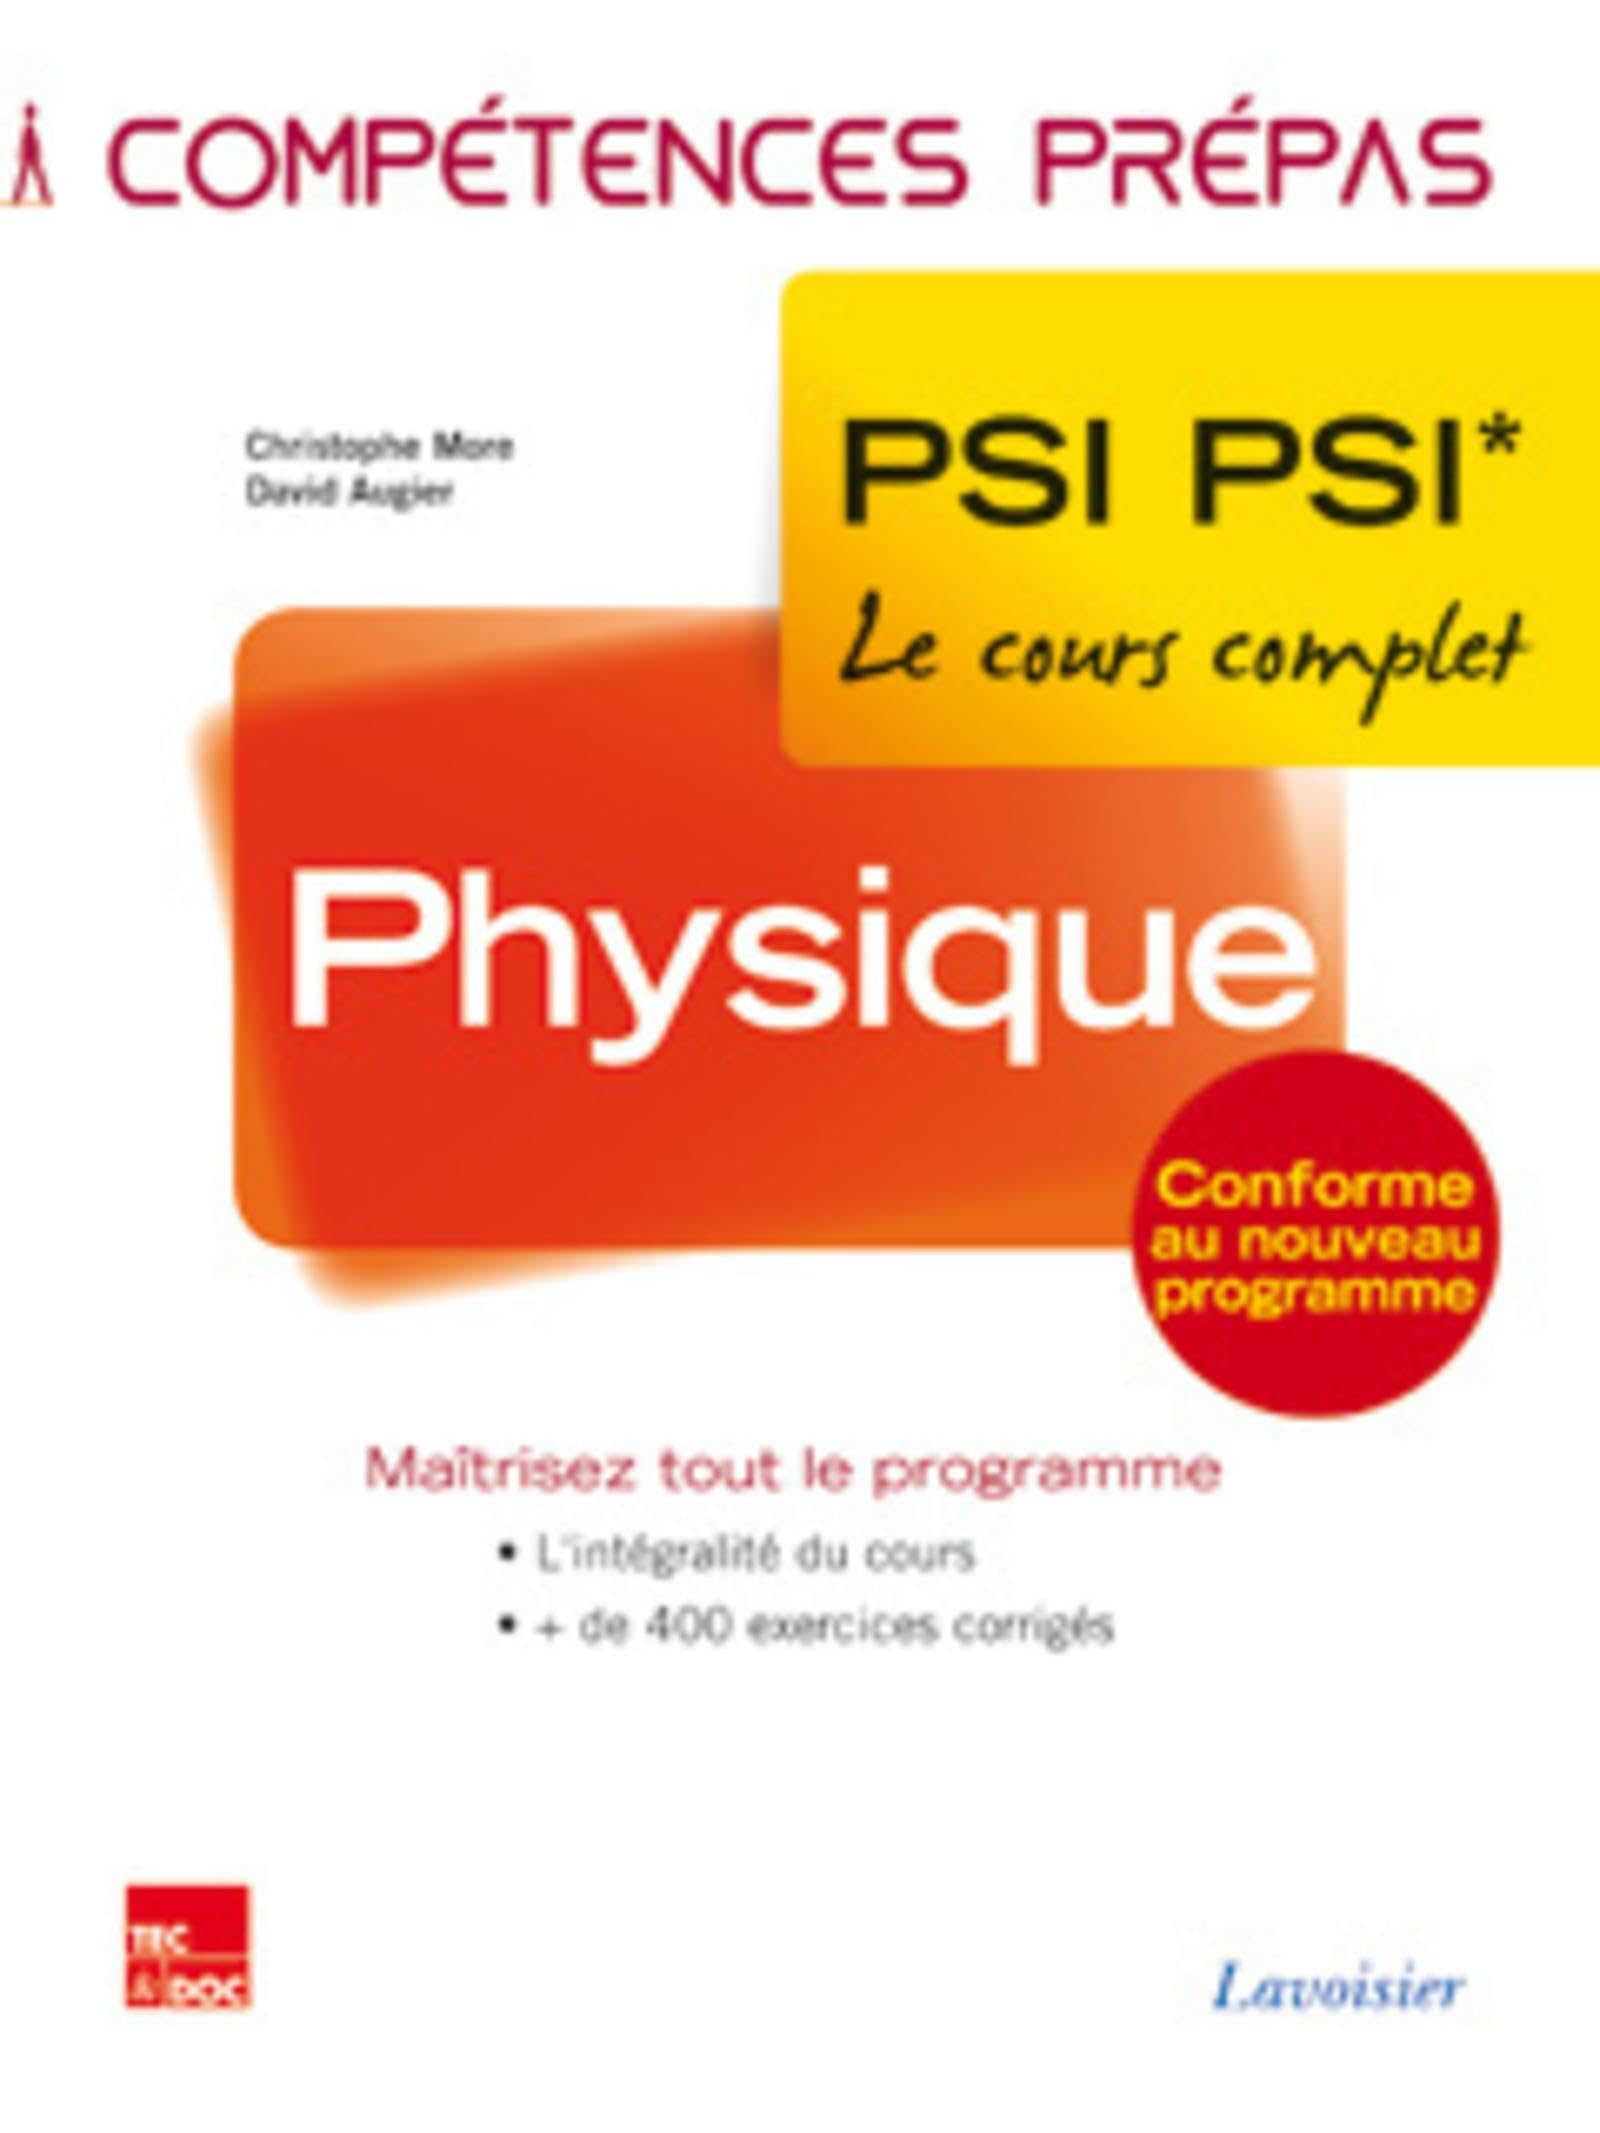 Physique : PSI PSI*, le cours complet : conforme au nouveau programme